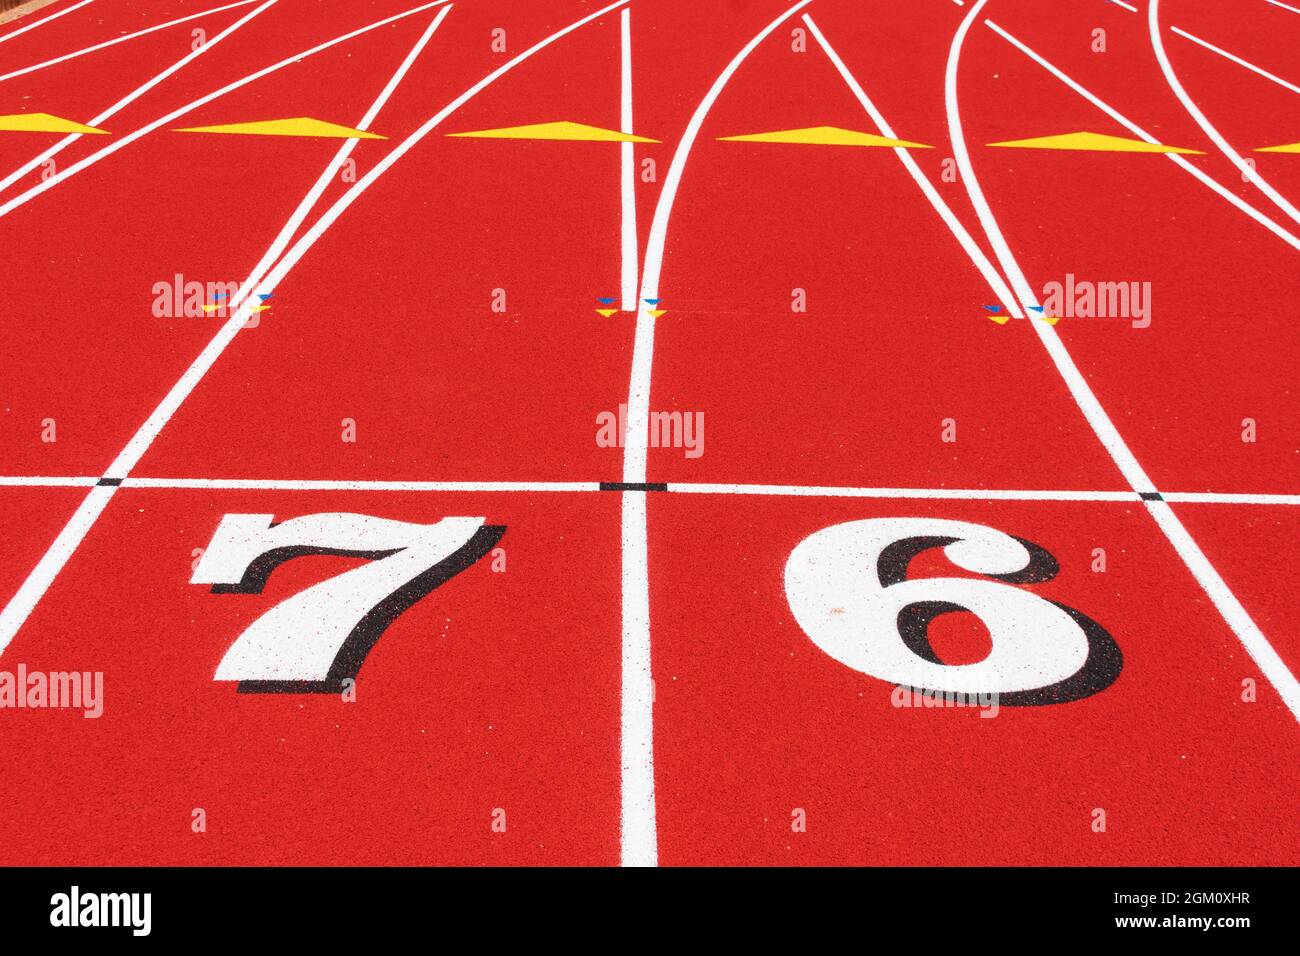 Pista e campo da corsa linea di partenza con i numeri 7 e 6 su pista in gomma tartan per tutte le condizioni meteo. Foto Stock